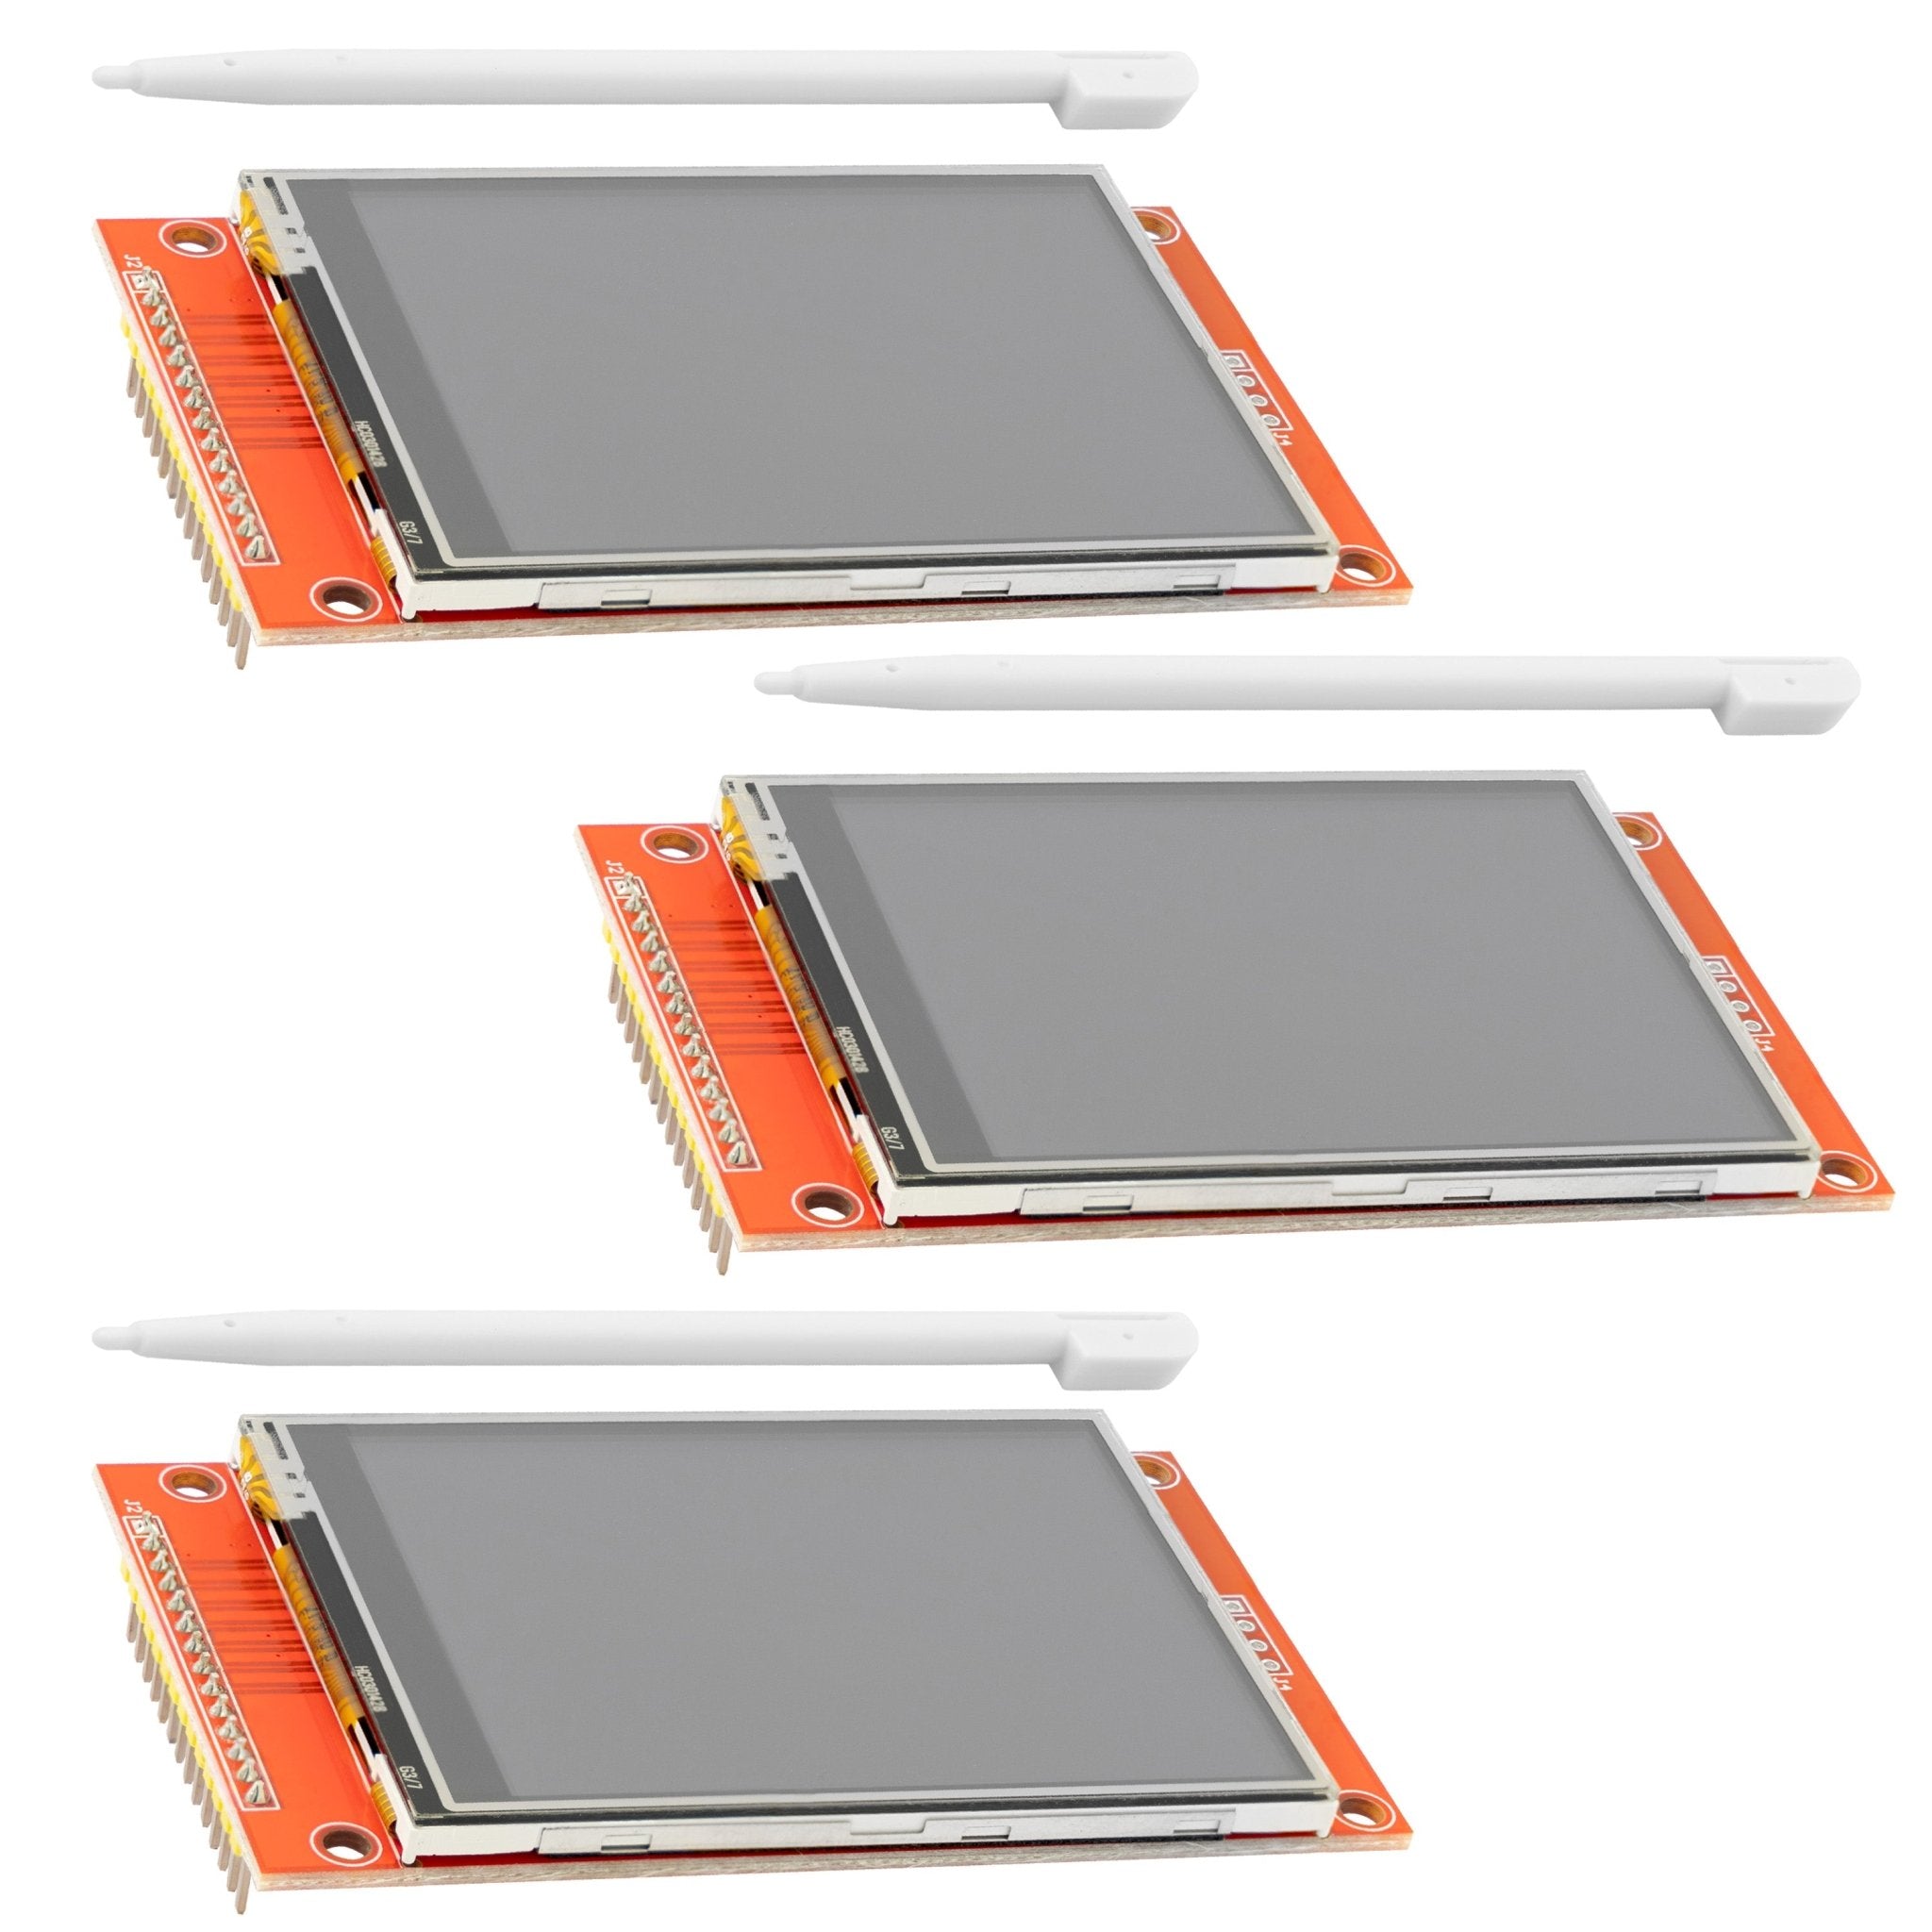 2,8 Zoll LCD TFT Touch Display - Kompatibel mit Arduino und Raspberry Pi - 320x240px Auflösung, ILI9341 Treiber, SPI Schnittstelle - AZ-Delivery